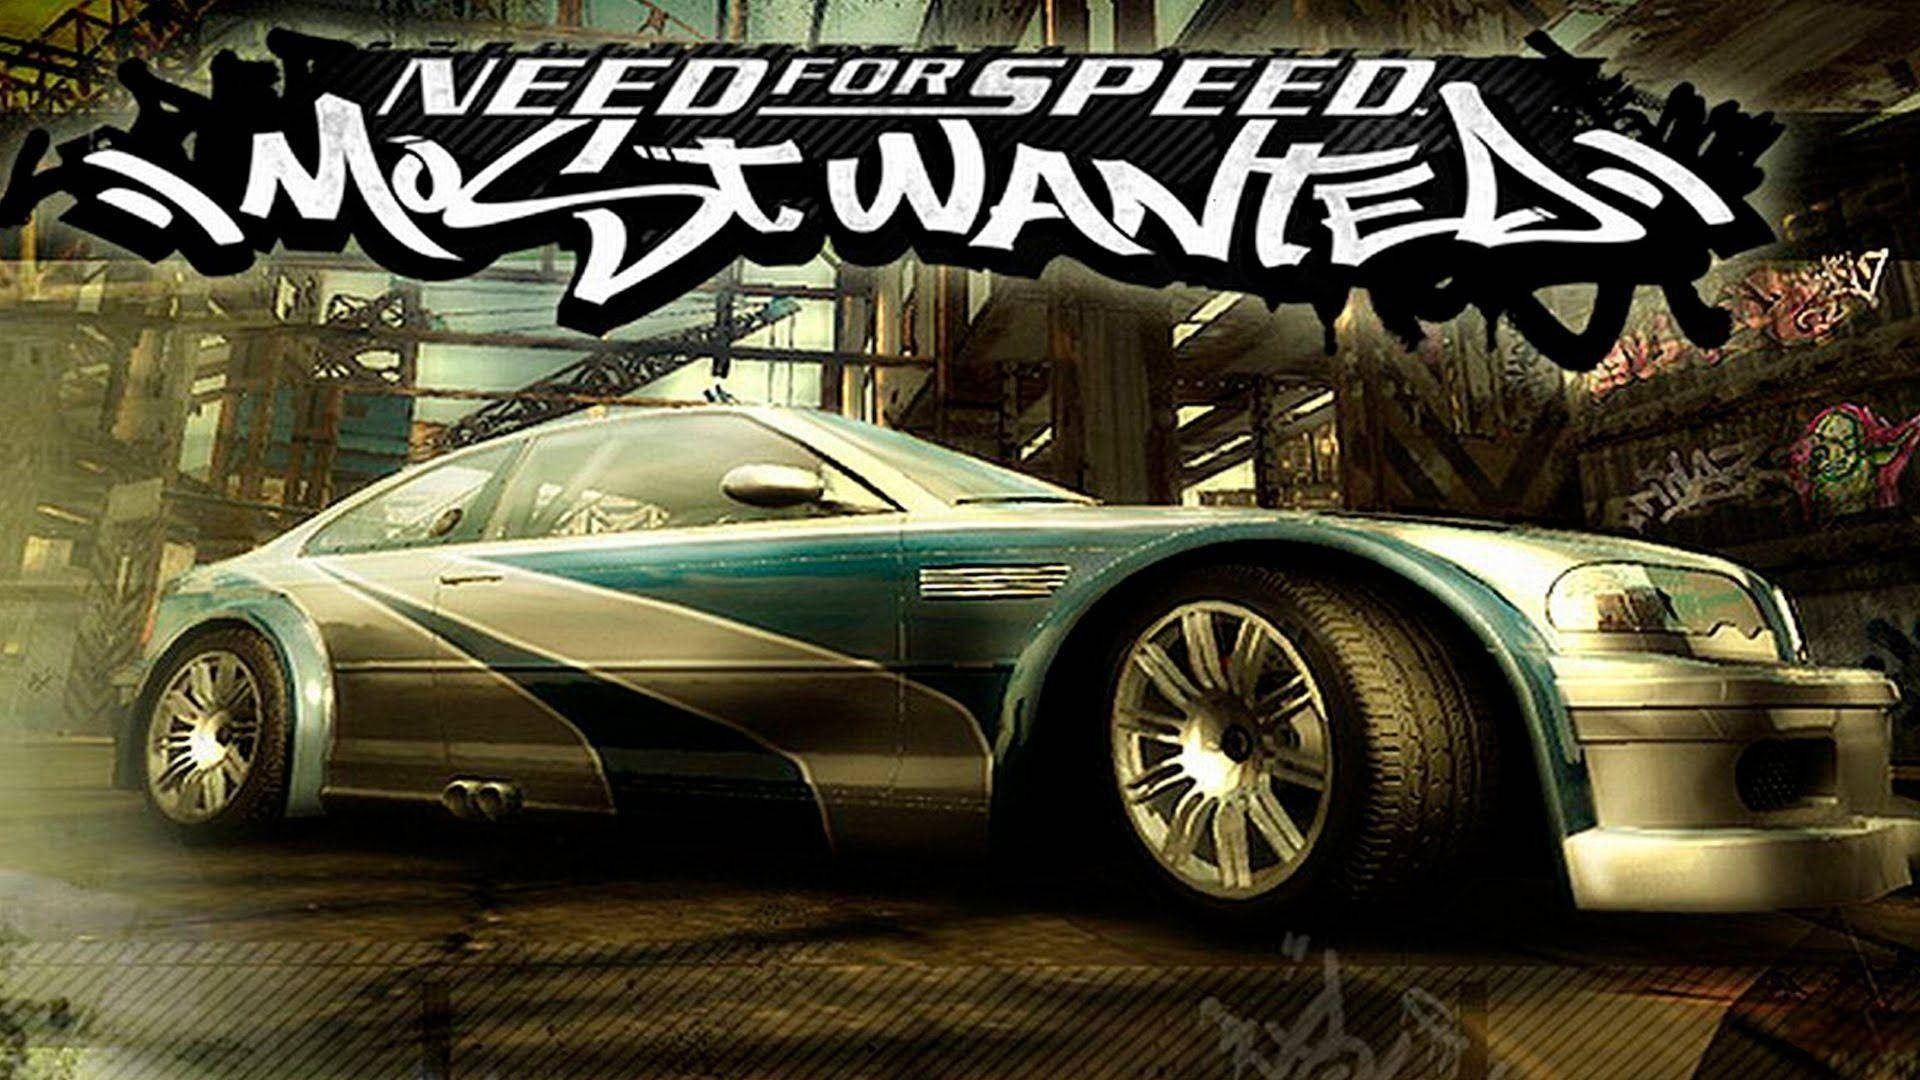 Desktopbmw M3 Gtr Need For Speed. Sfondo